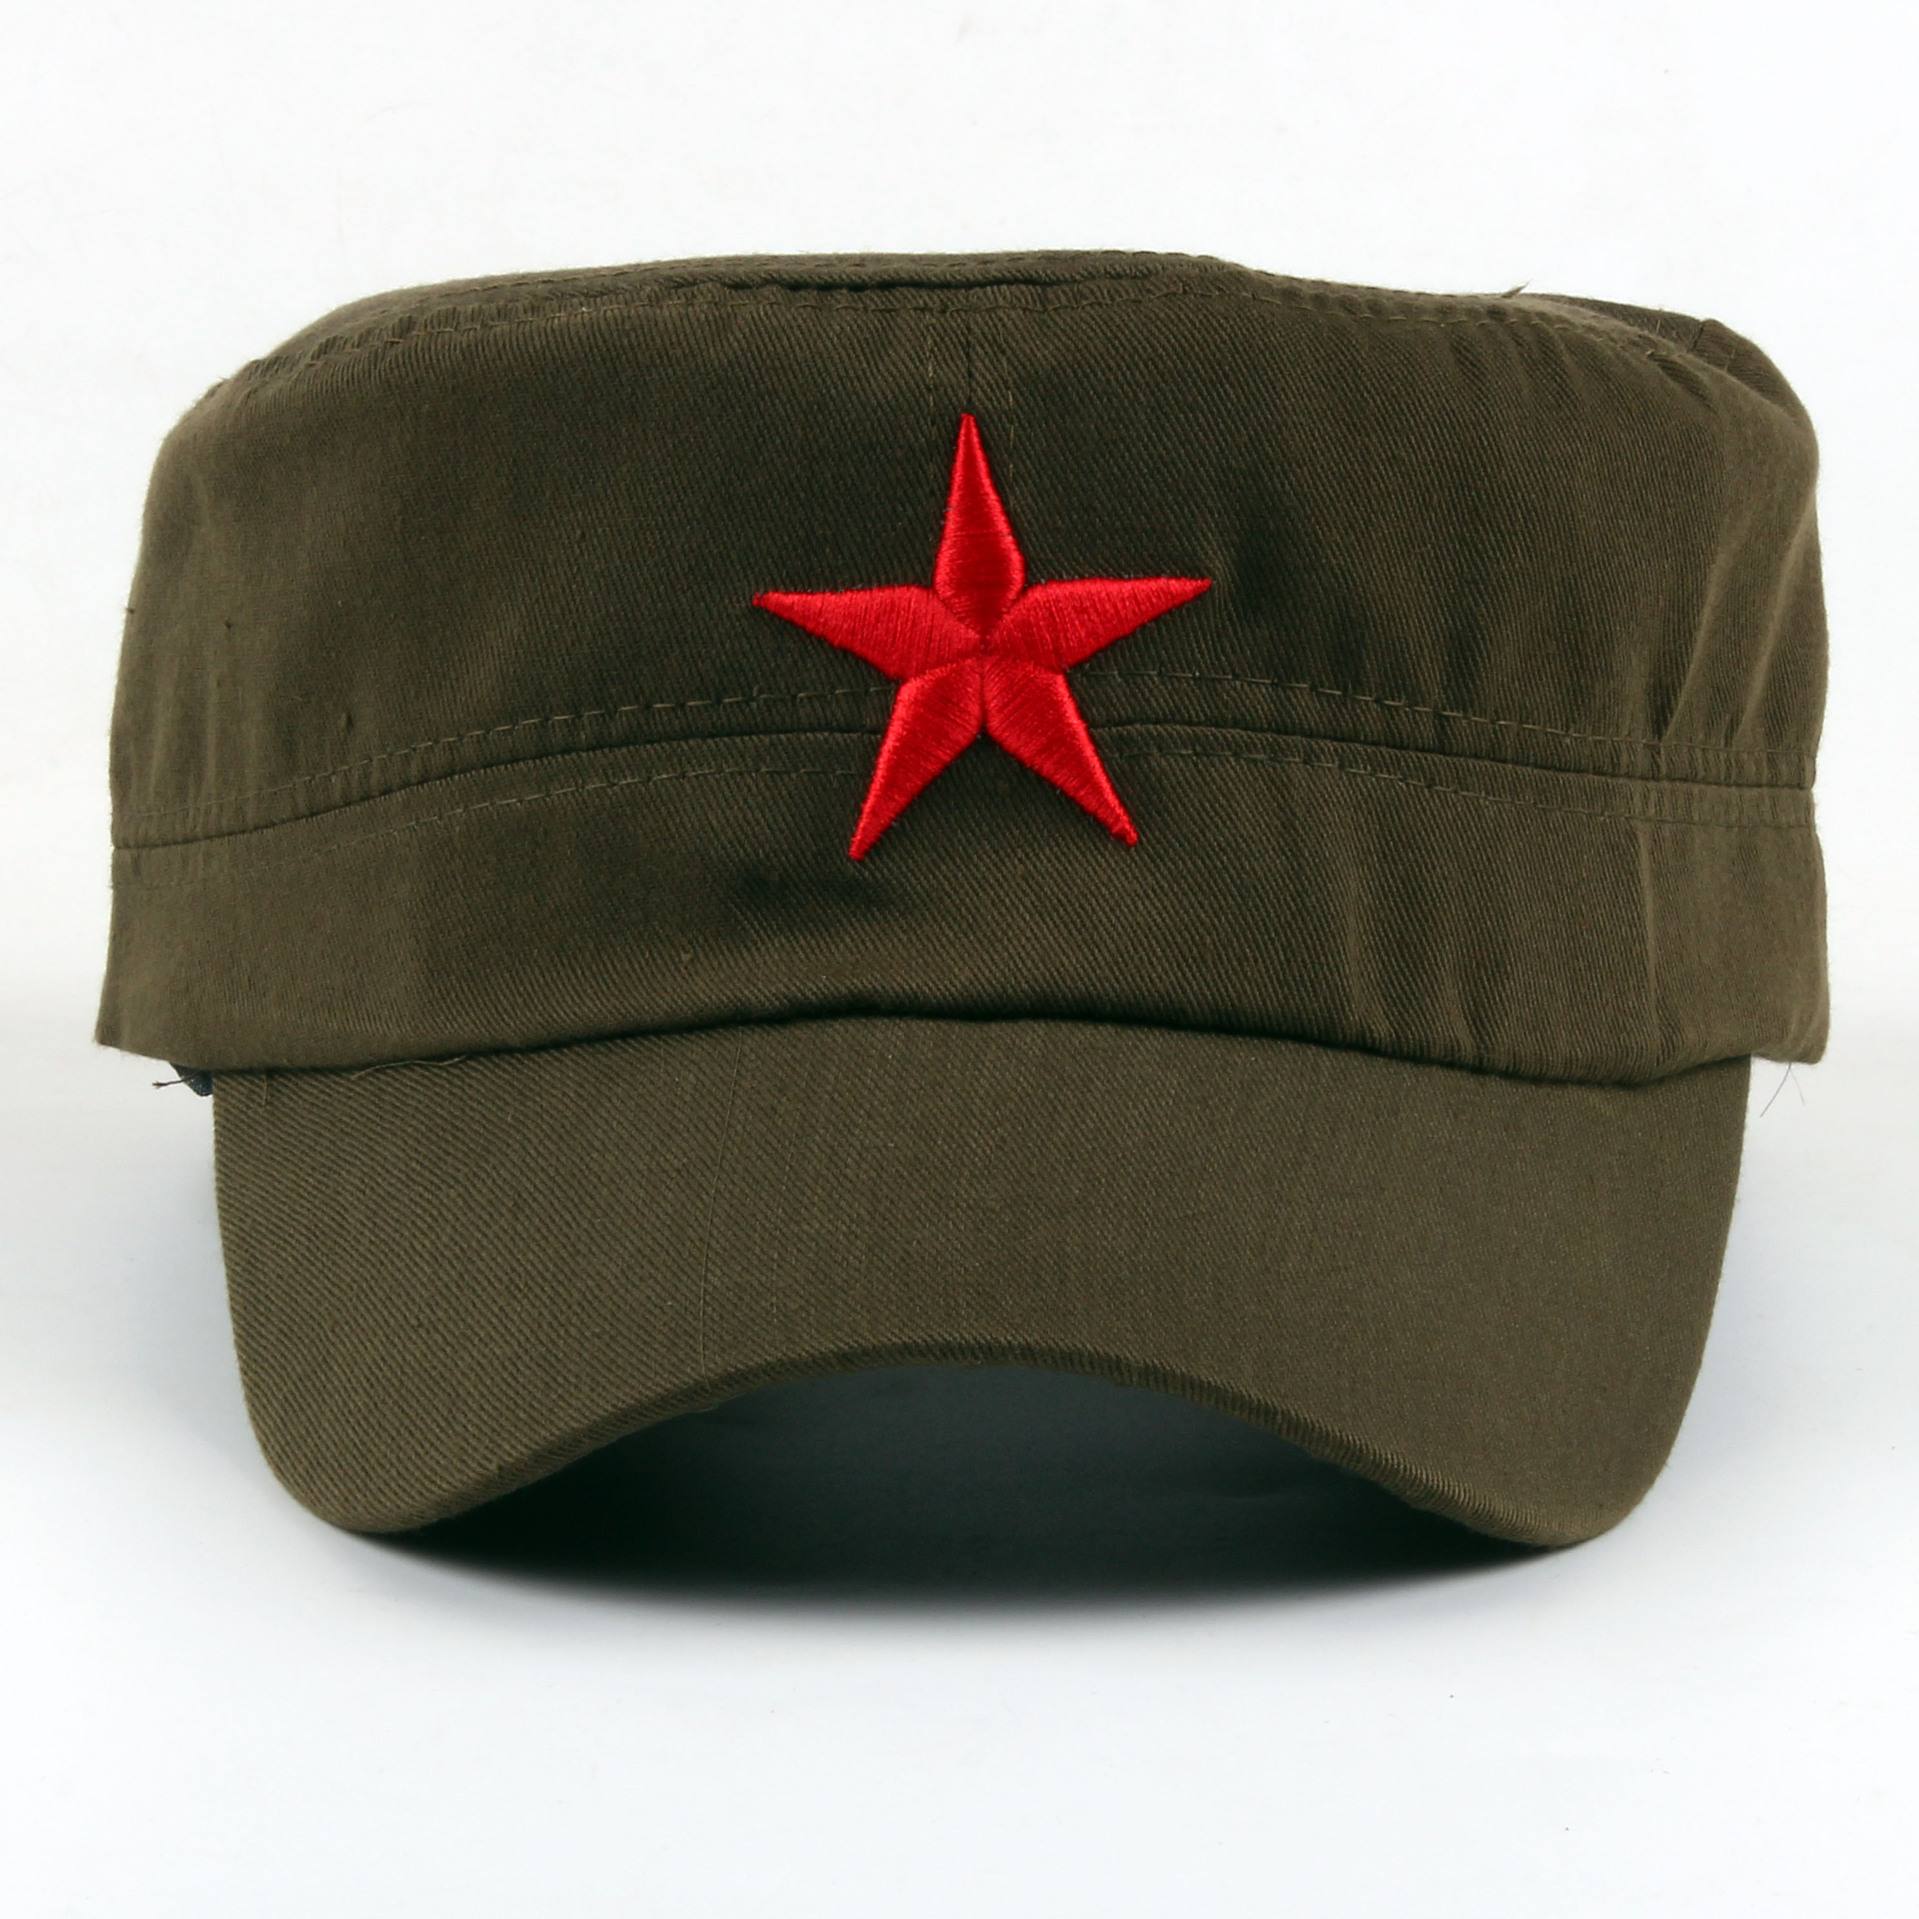 艰苦时期,红军帽子的变化,代表着一个民族的伟大.